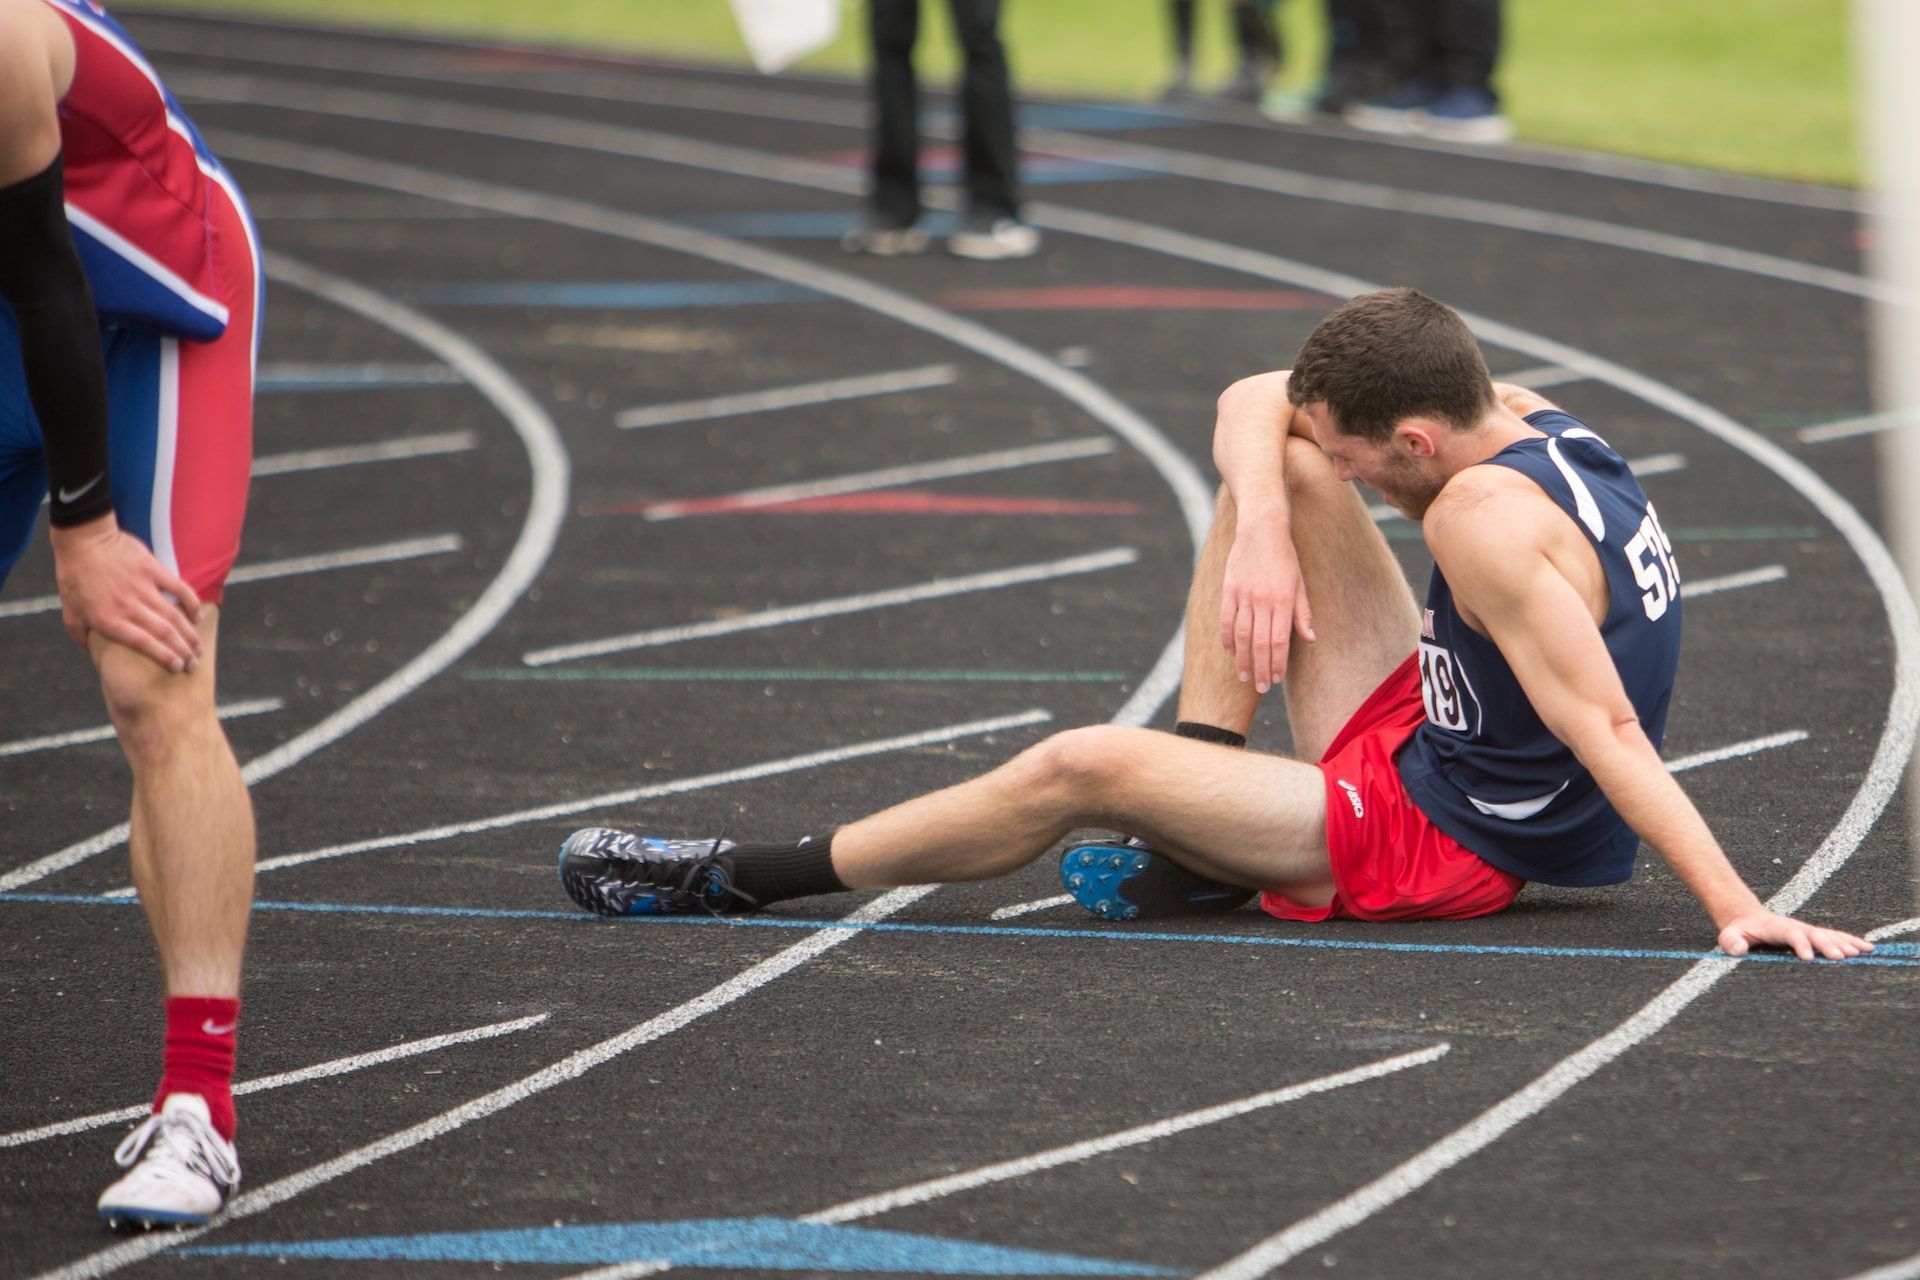 un athlète est assis, épuisé dans une piste de course à pied - Photo de Elisa Kennemer sur https://unsplash.com/fr/photos/OHmYjiiaOvs